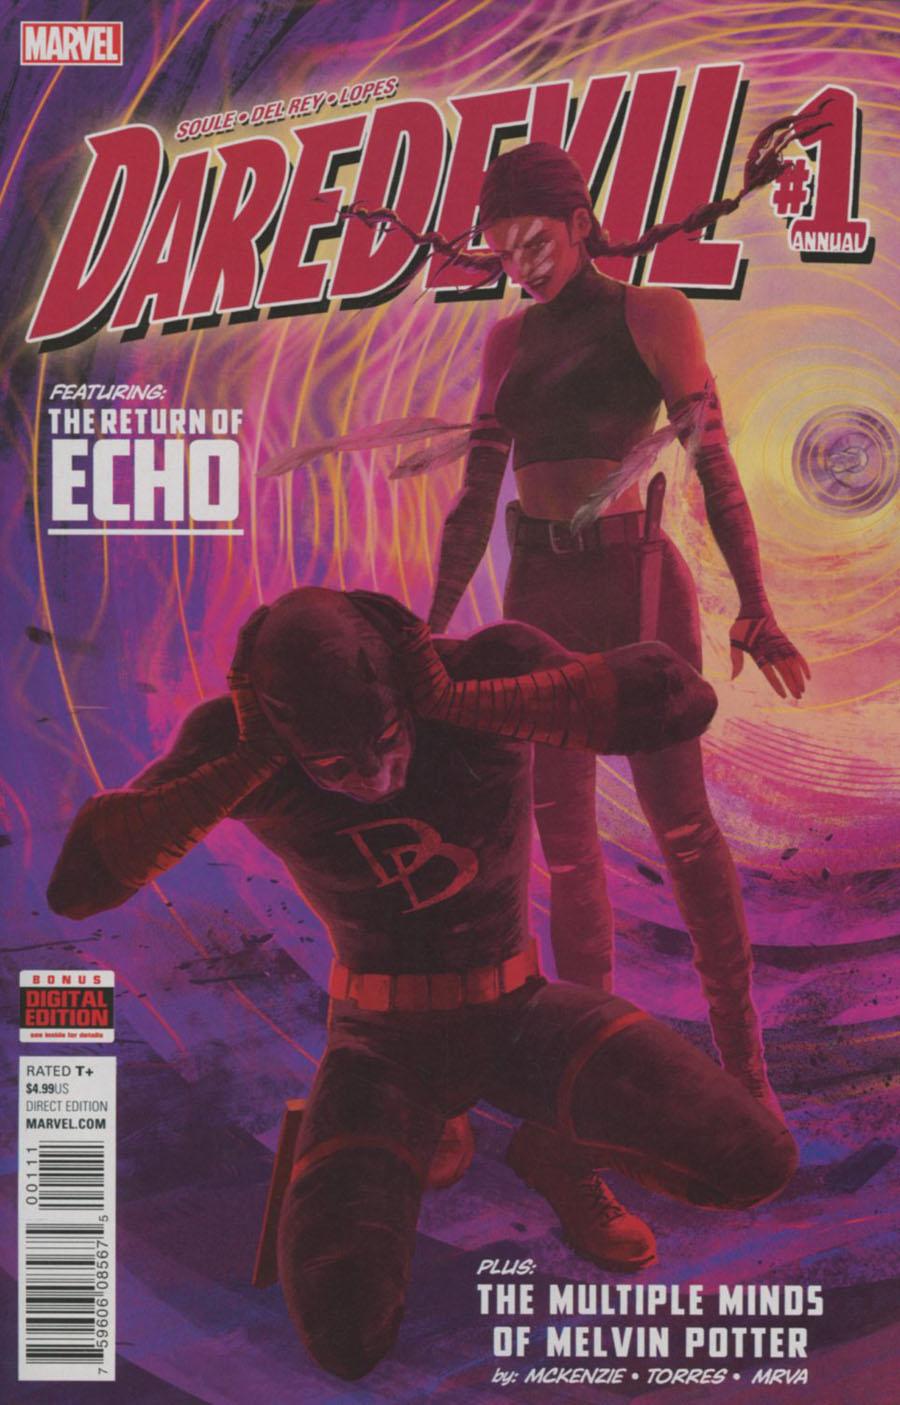 Daredevil Vol. 5 Annual #1